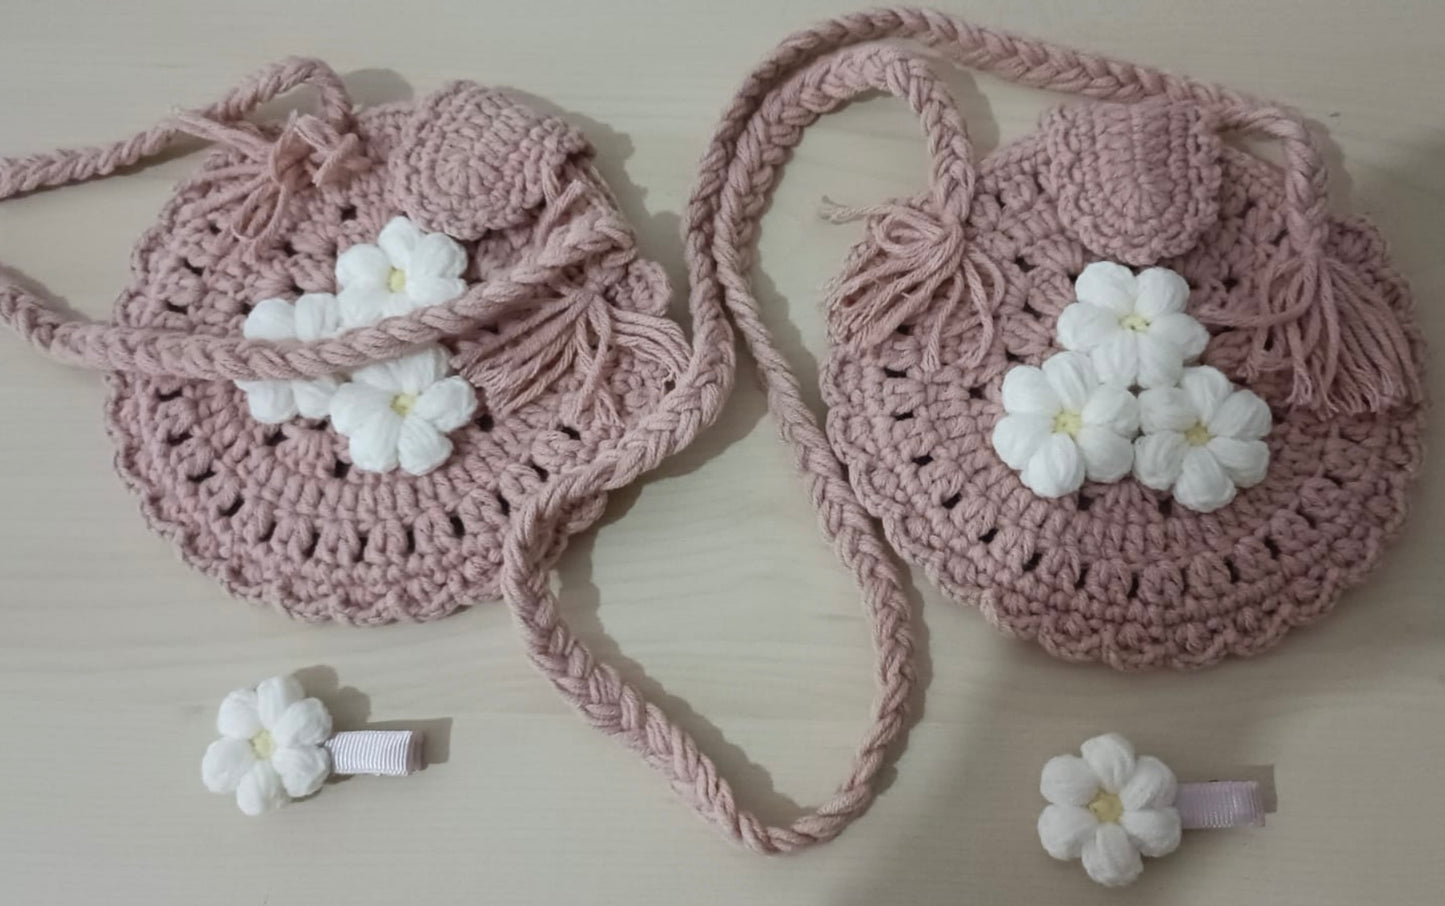 Handmade Girl’s Crochet Bag